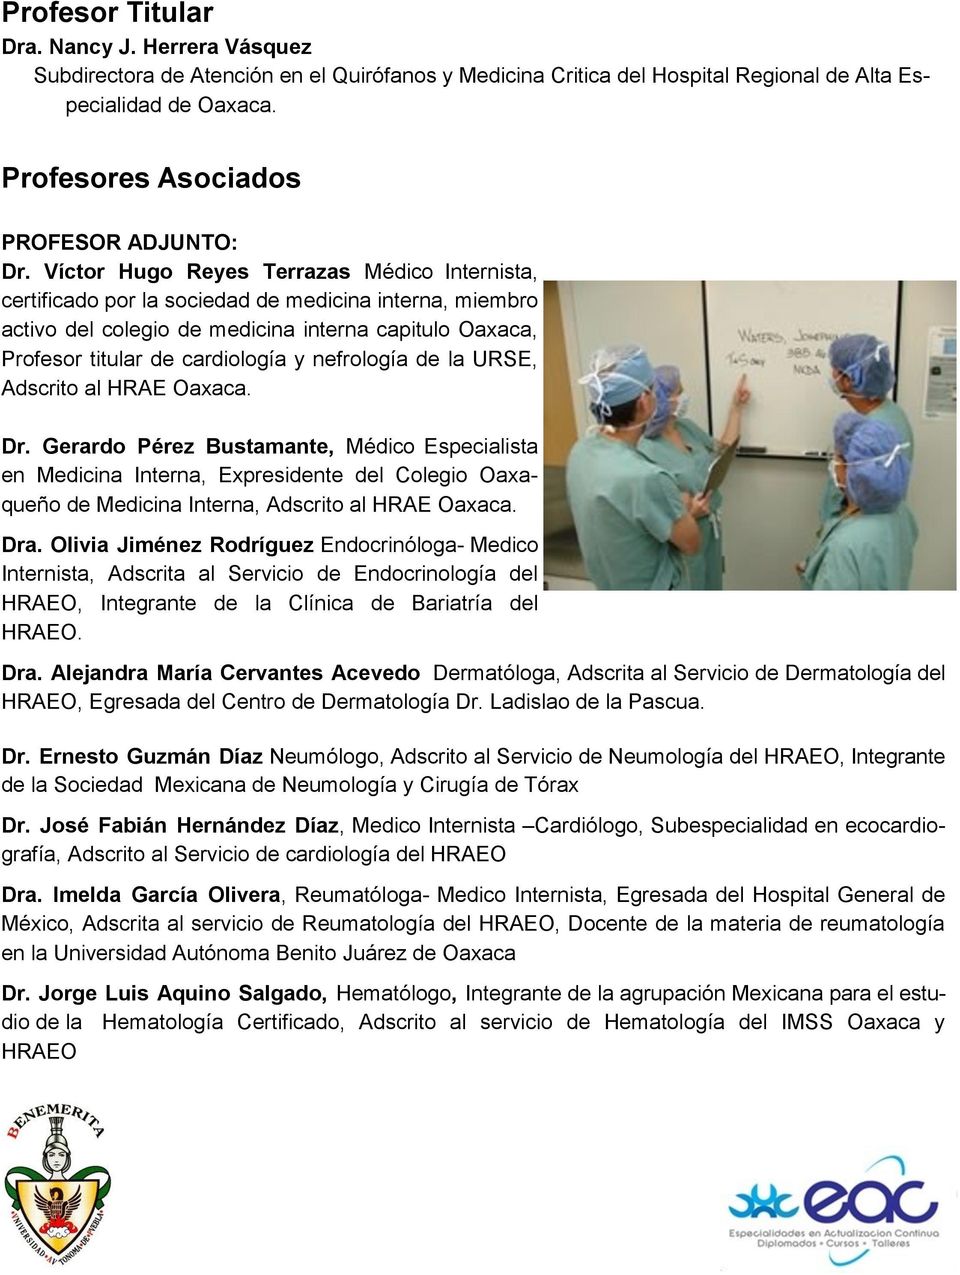 Víctor Hugo Reyes Terrazas Médico Internista, certificado por la sociedad de medicina interna, miembro activo del colegio de medicina interna capitulo Oaxaca, Profesor titular de cardiología y